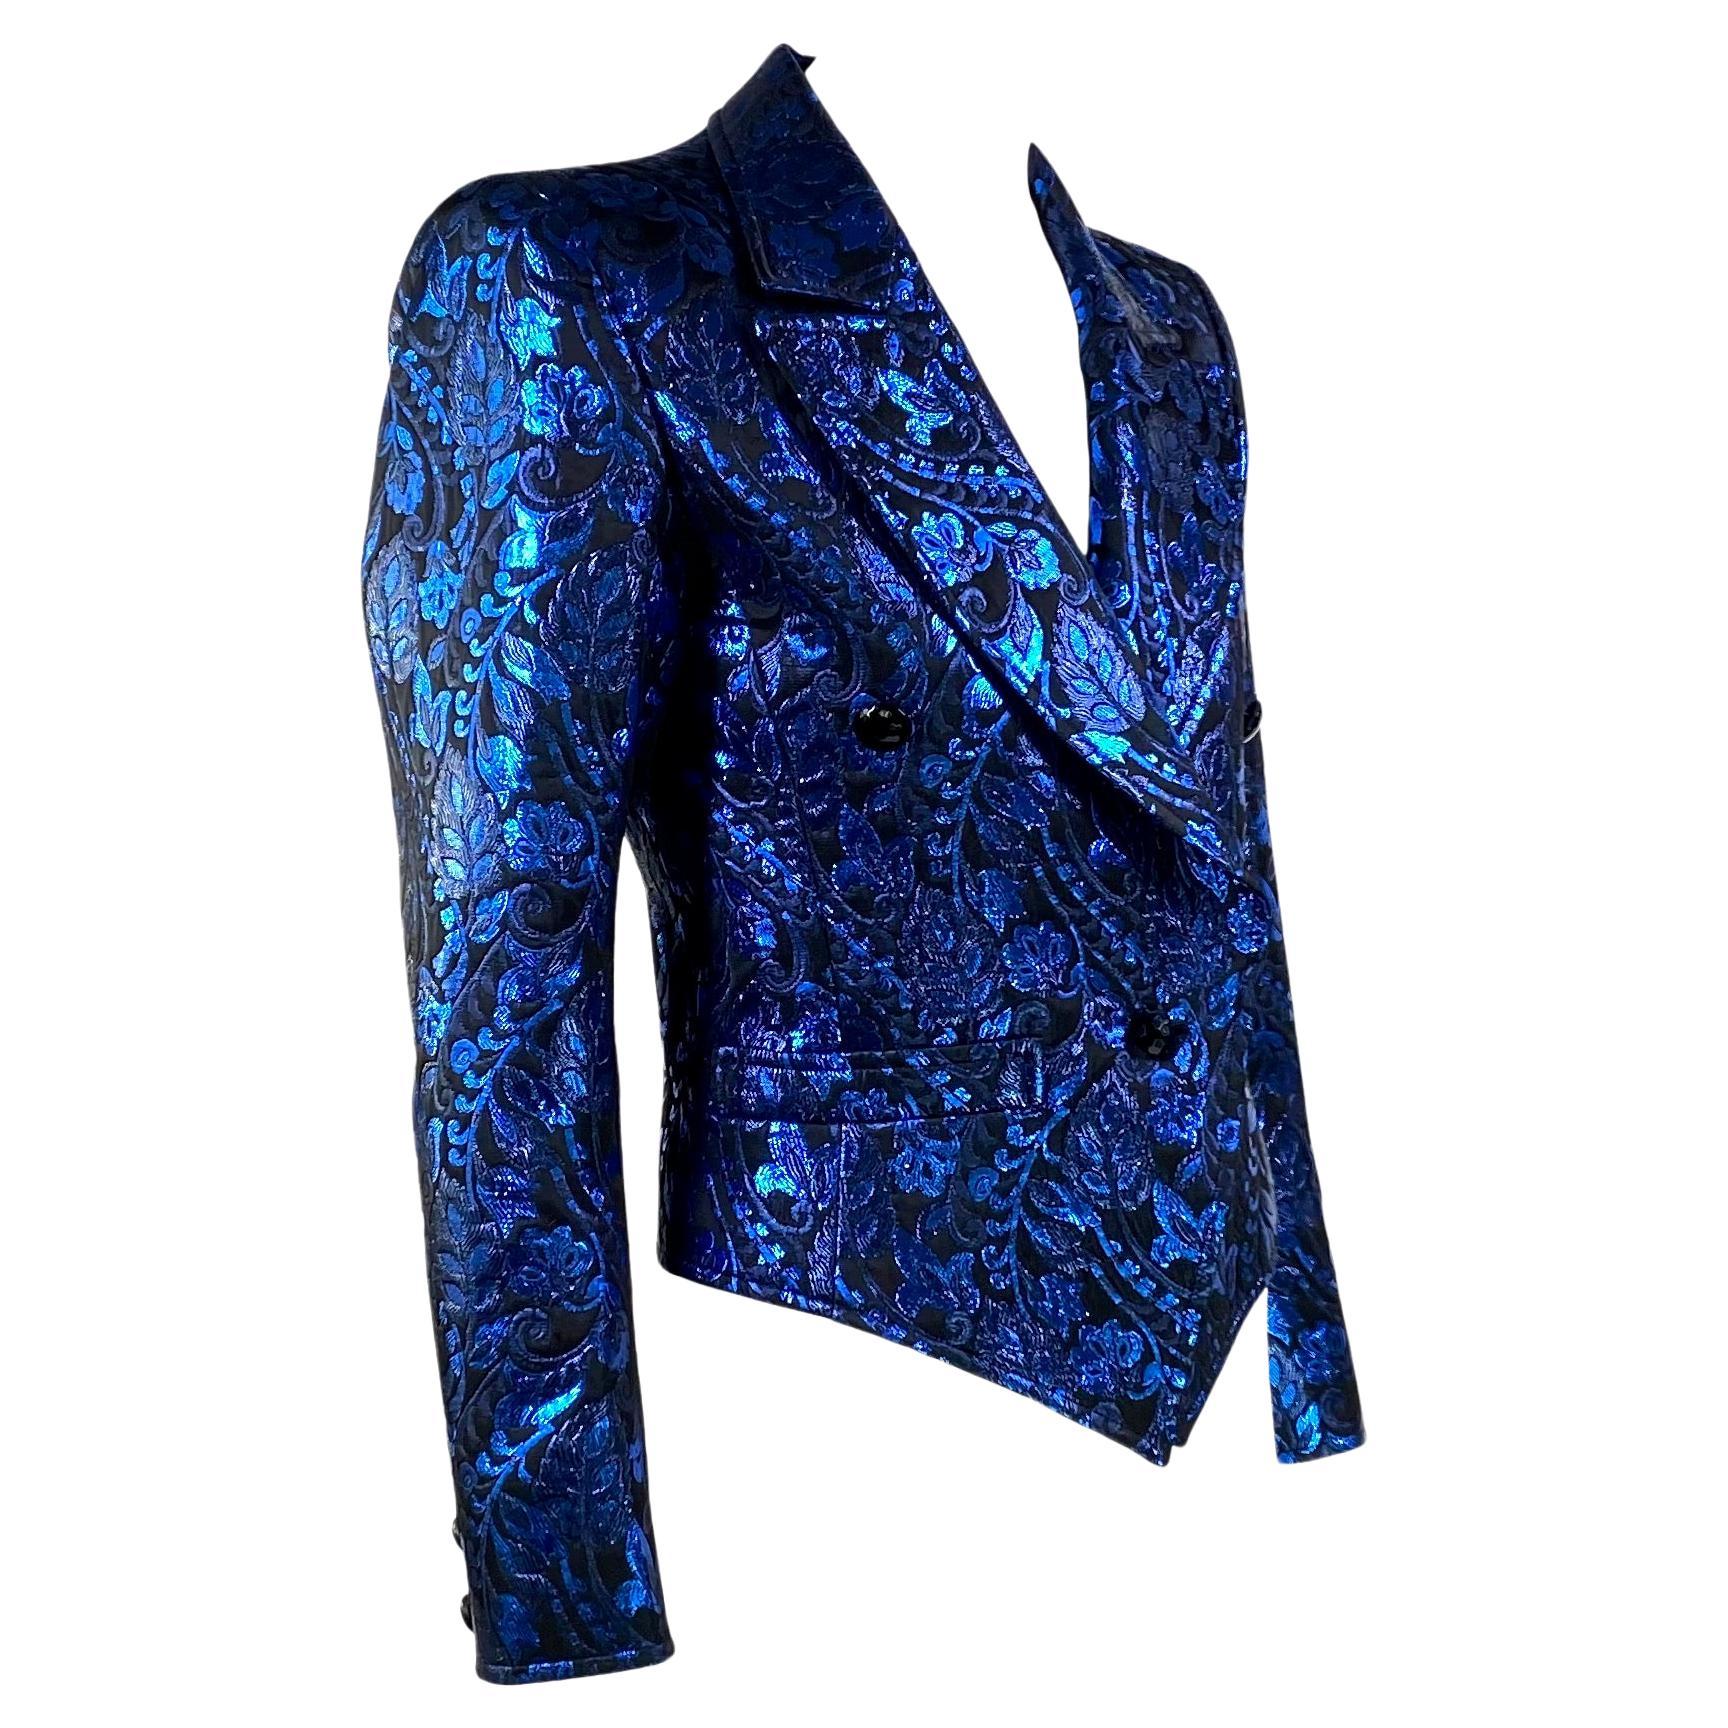 Wir präsentieren einen atemberaubenden Saint Laurent Rive Gauche Blazer aus blauem Metallic-Lamé, entworfen von Yves Saint Laurent. Diese Jacke aus den 1980er Jahren verfügt über zwei Vordertaschen, ein großes Revers und einen Pseudo-Doppelreiher.